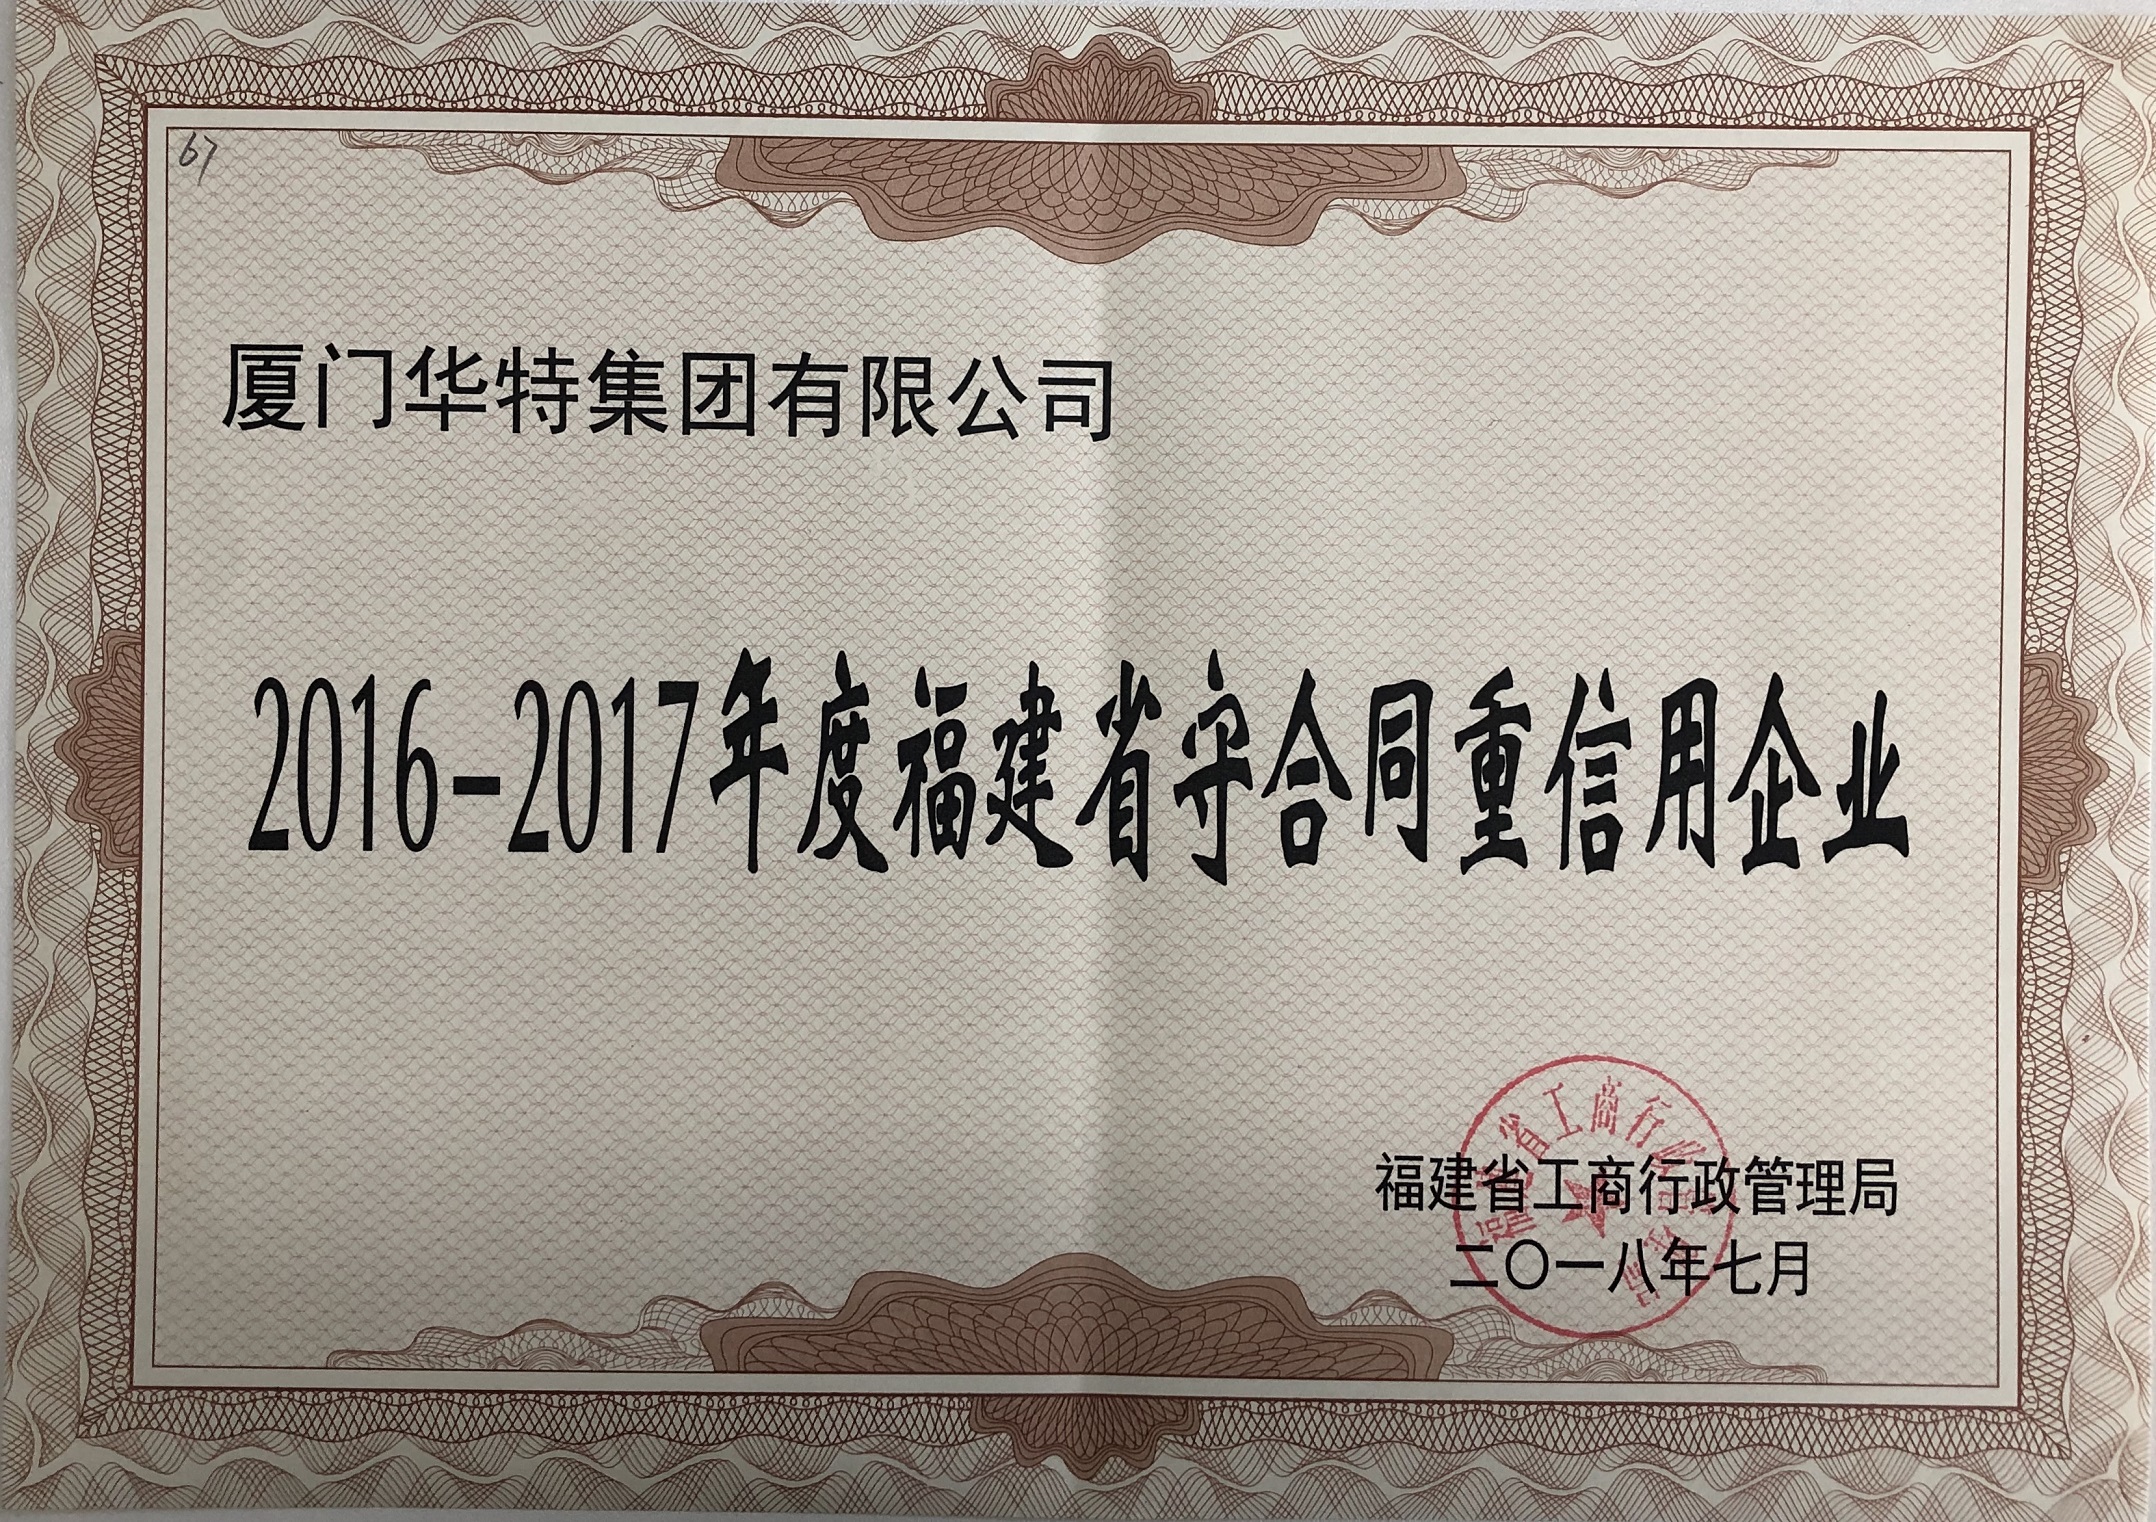 威尼斯欢乐娱人v36762016-2017年度守合同重信用企业证书——福建省.jpg